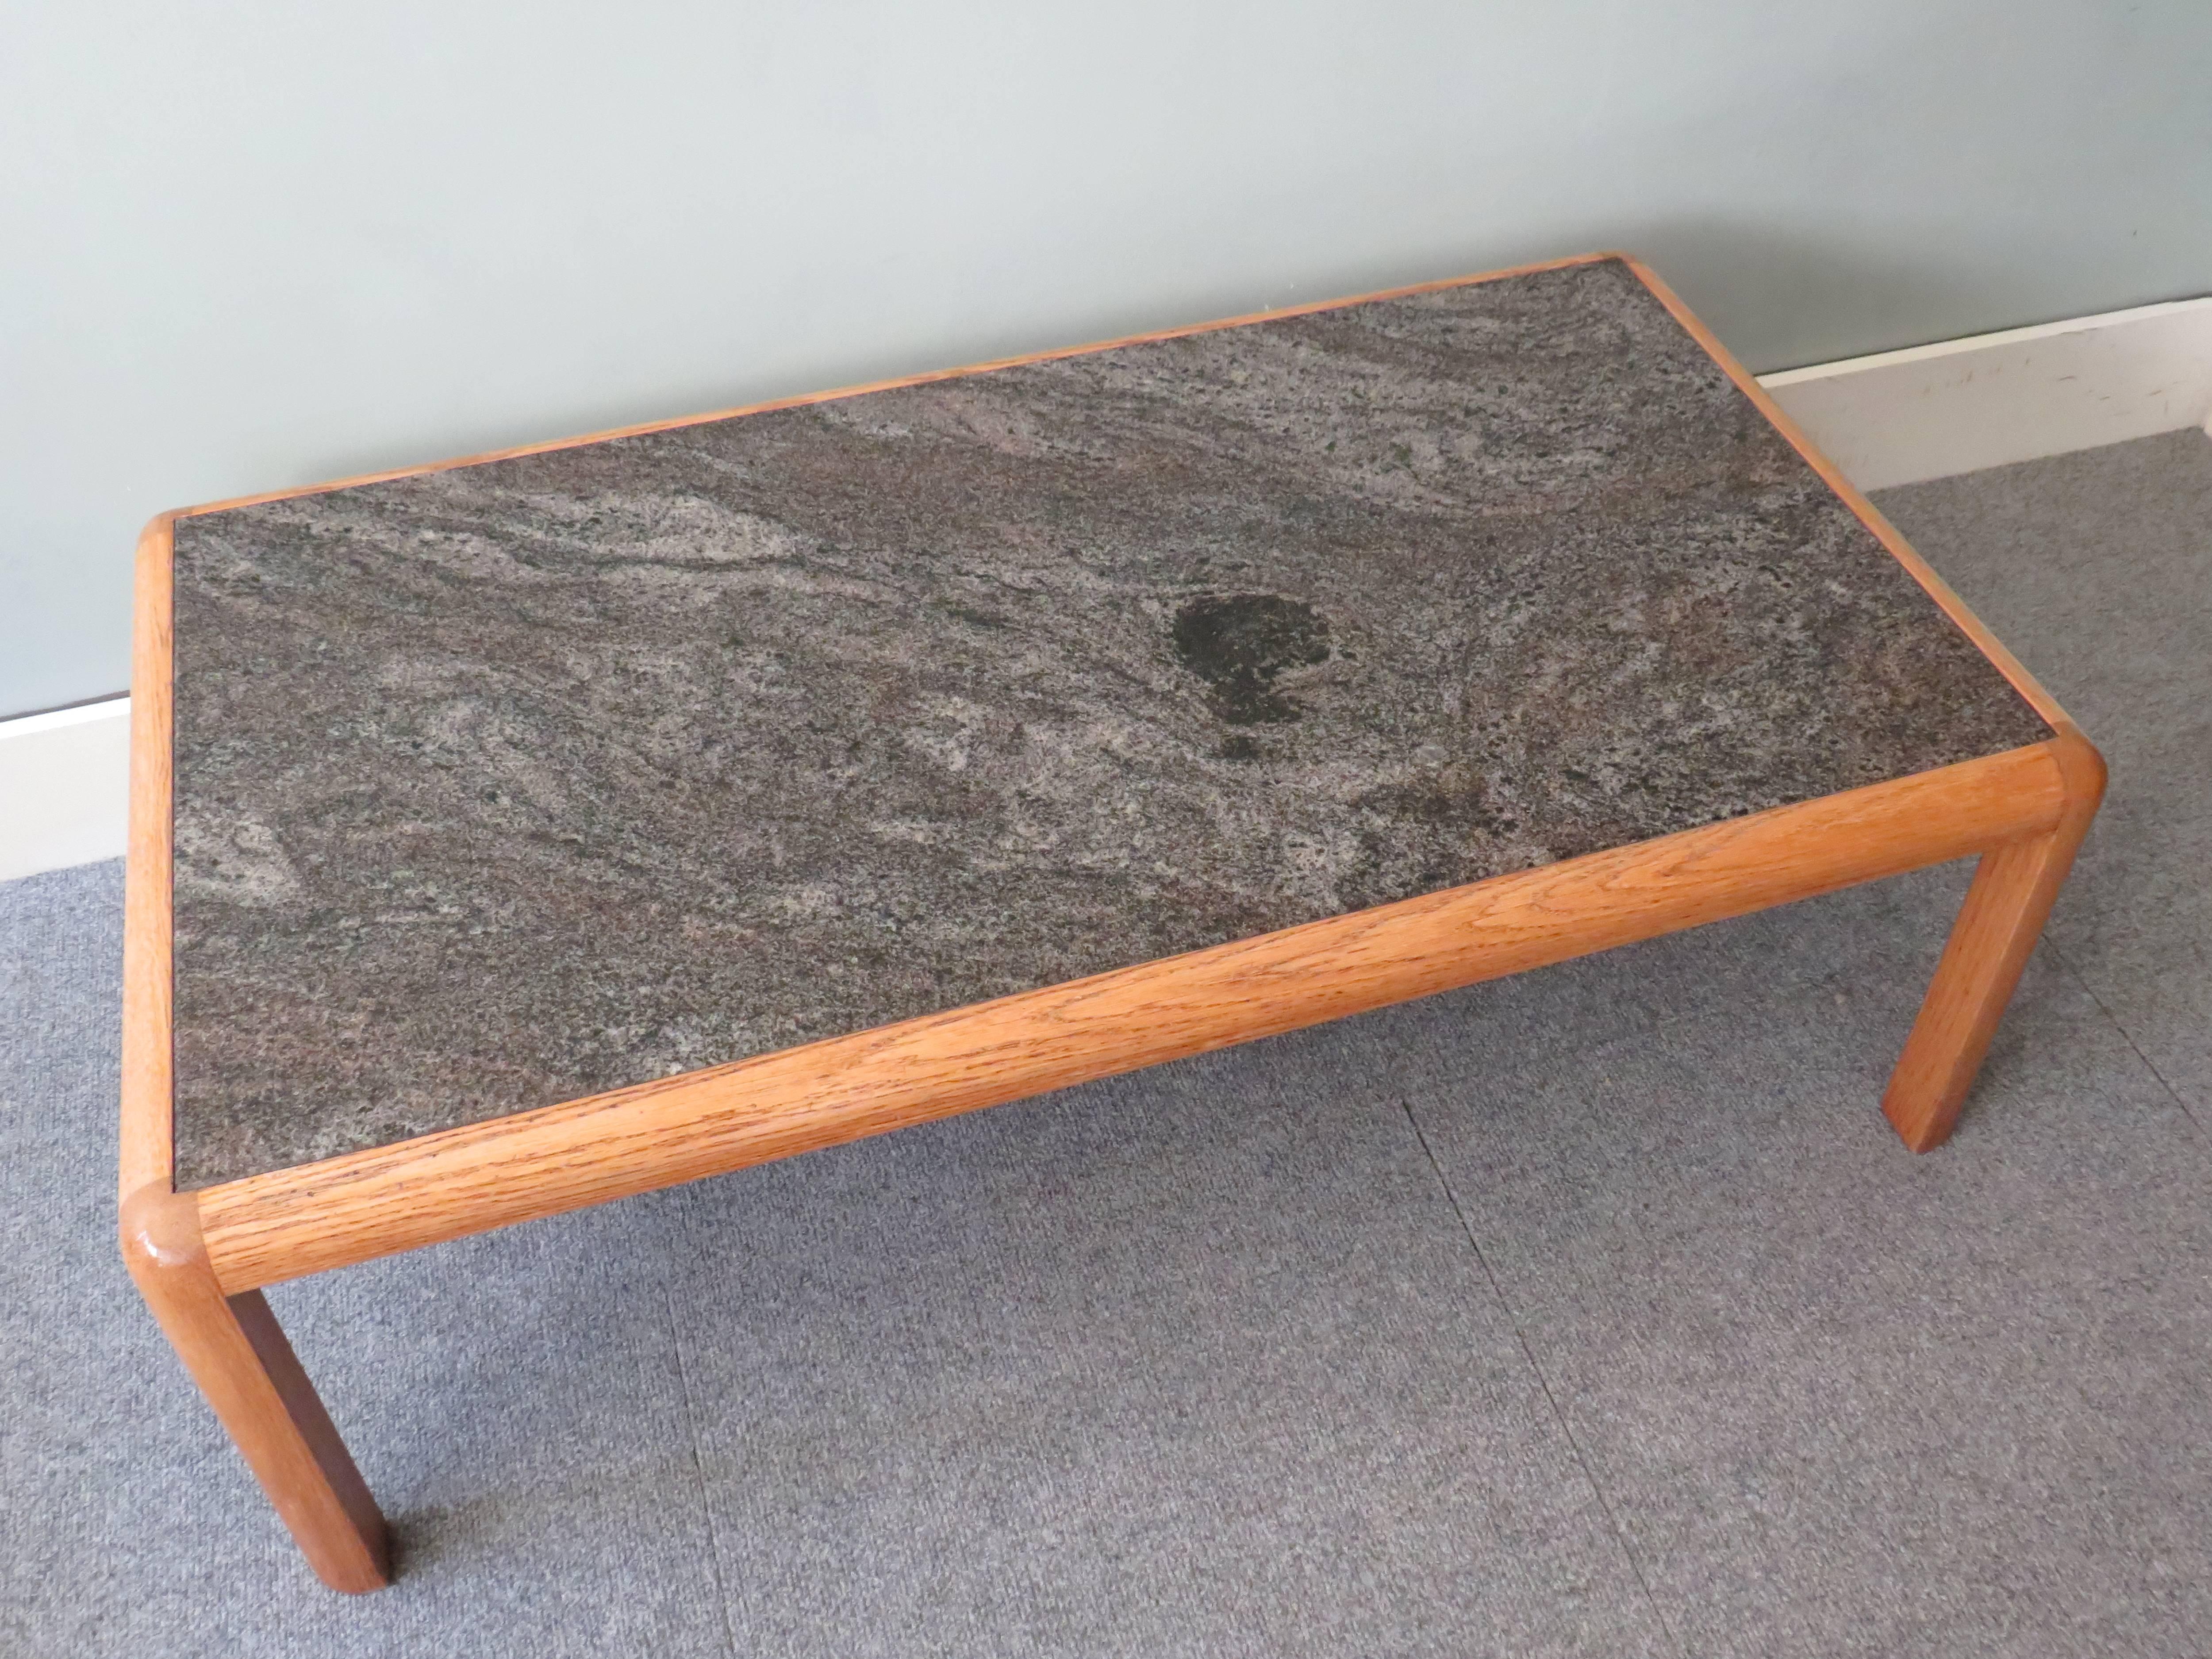 Table basse de Van den Berghe-Pauvers, Gand, Belgique, 1972.
Conçu par Bob Van den Berghe et fabriqué par Van den Berghe-Pauvers.
Cette table appartient à la série Konstructo, conçue en 1972.
La table a un plateau en marbre, bleu et gris, et un